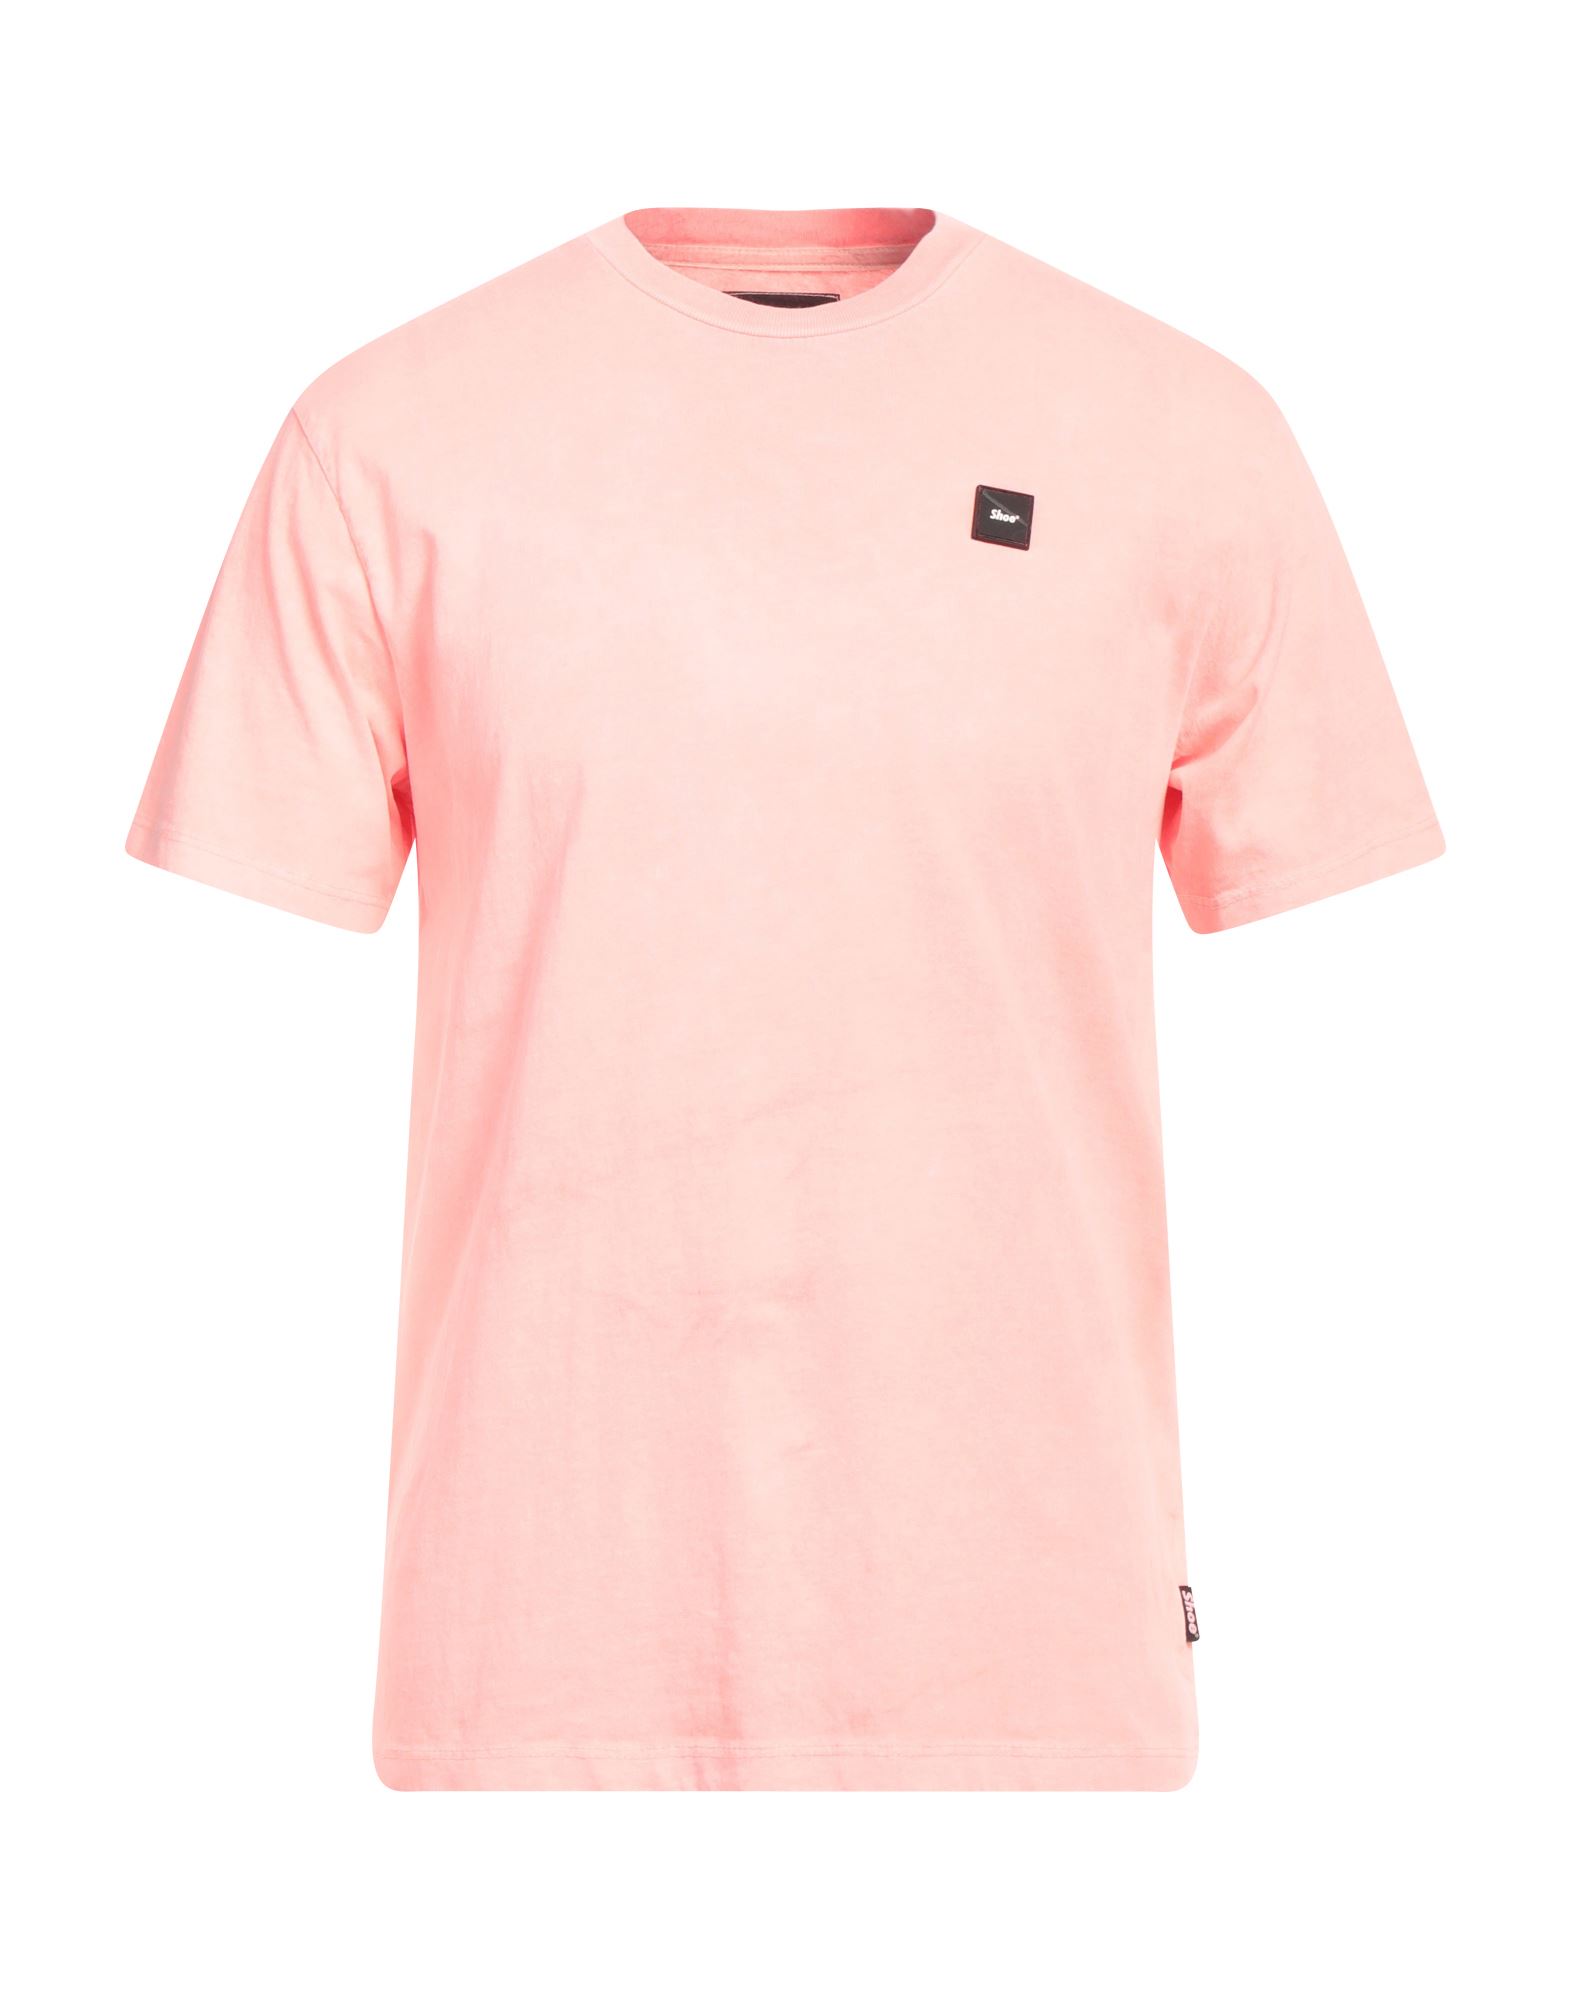 Shoe® Shoe Man T-shirt Salmon Pink Size L Cotton